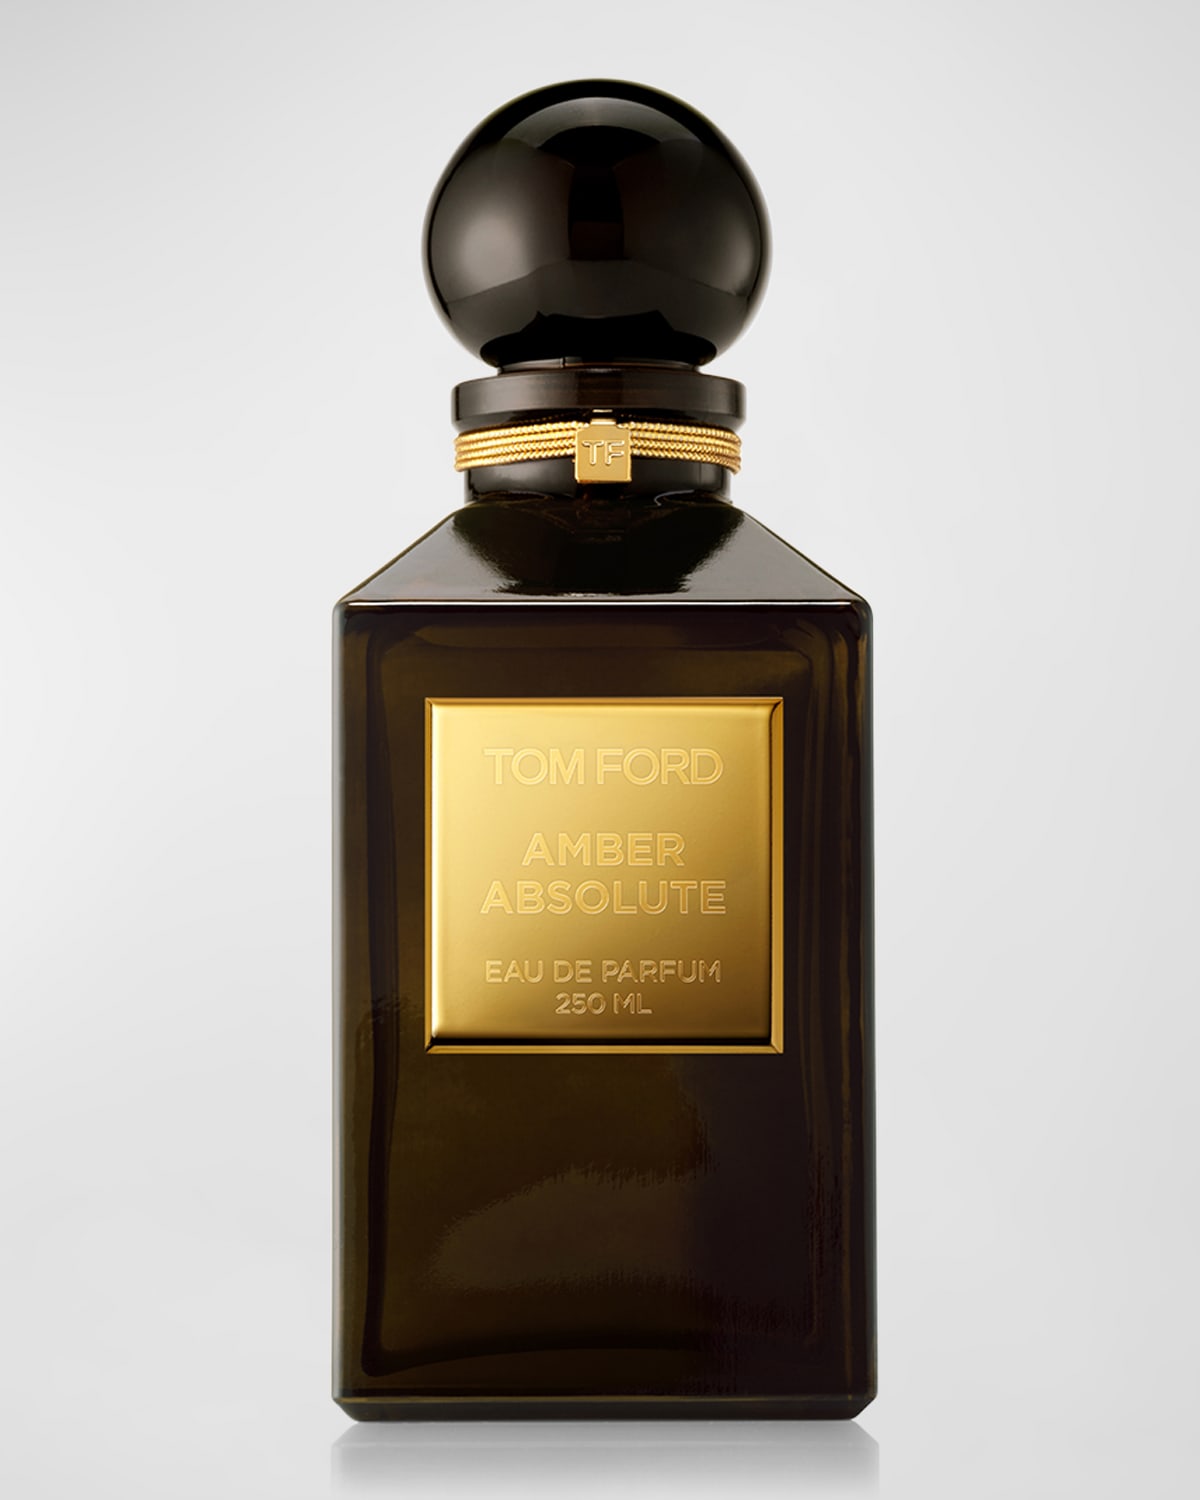 Amber Absolute Eau de Parfum, 8.4 oz. - Private Blend Reserve Decanter